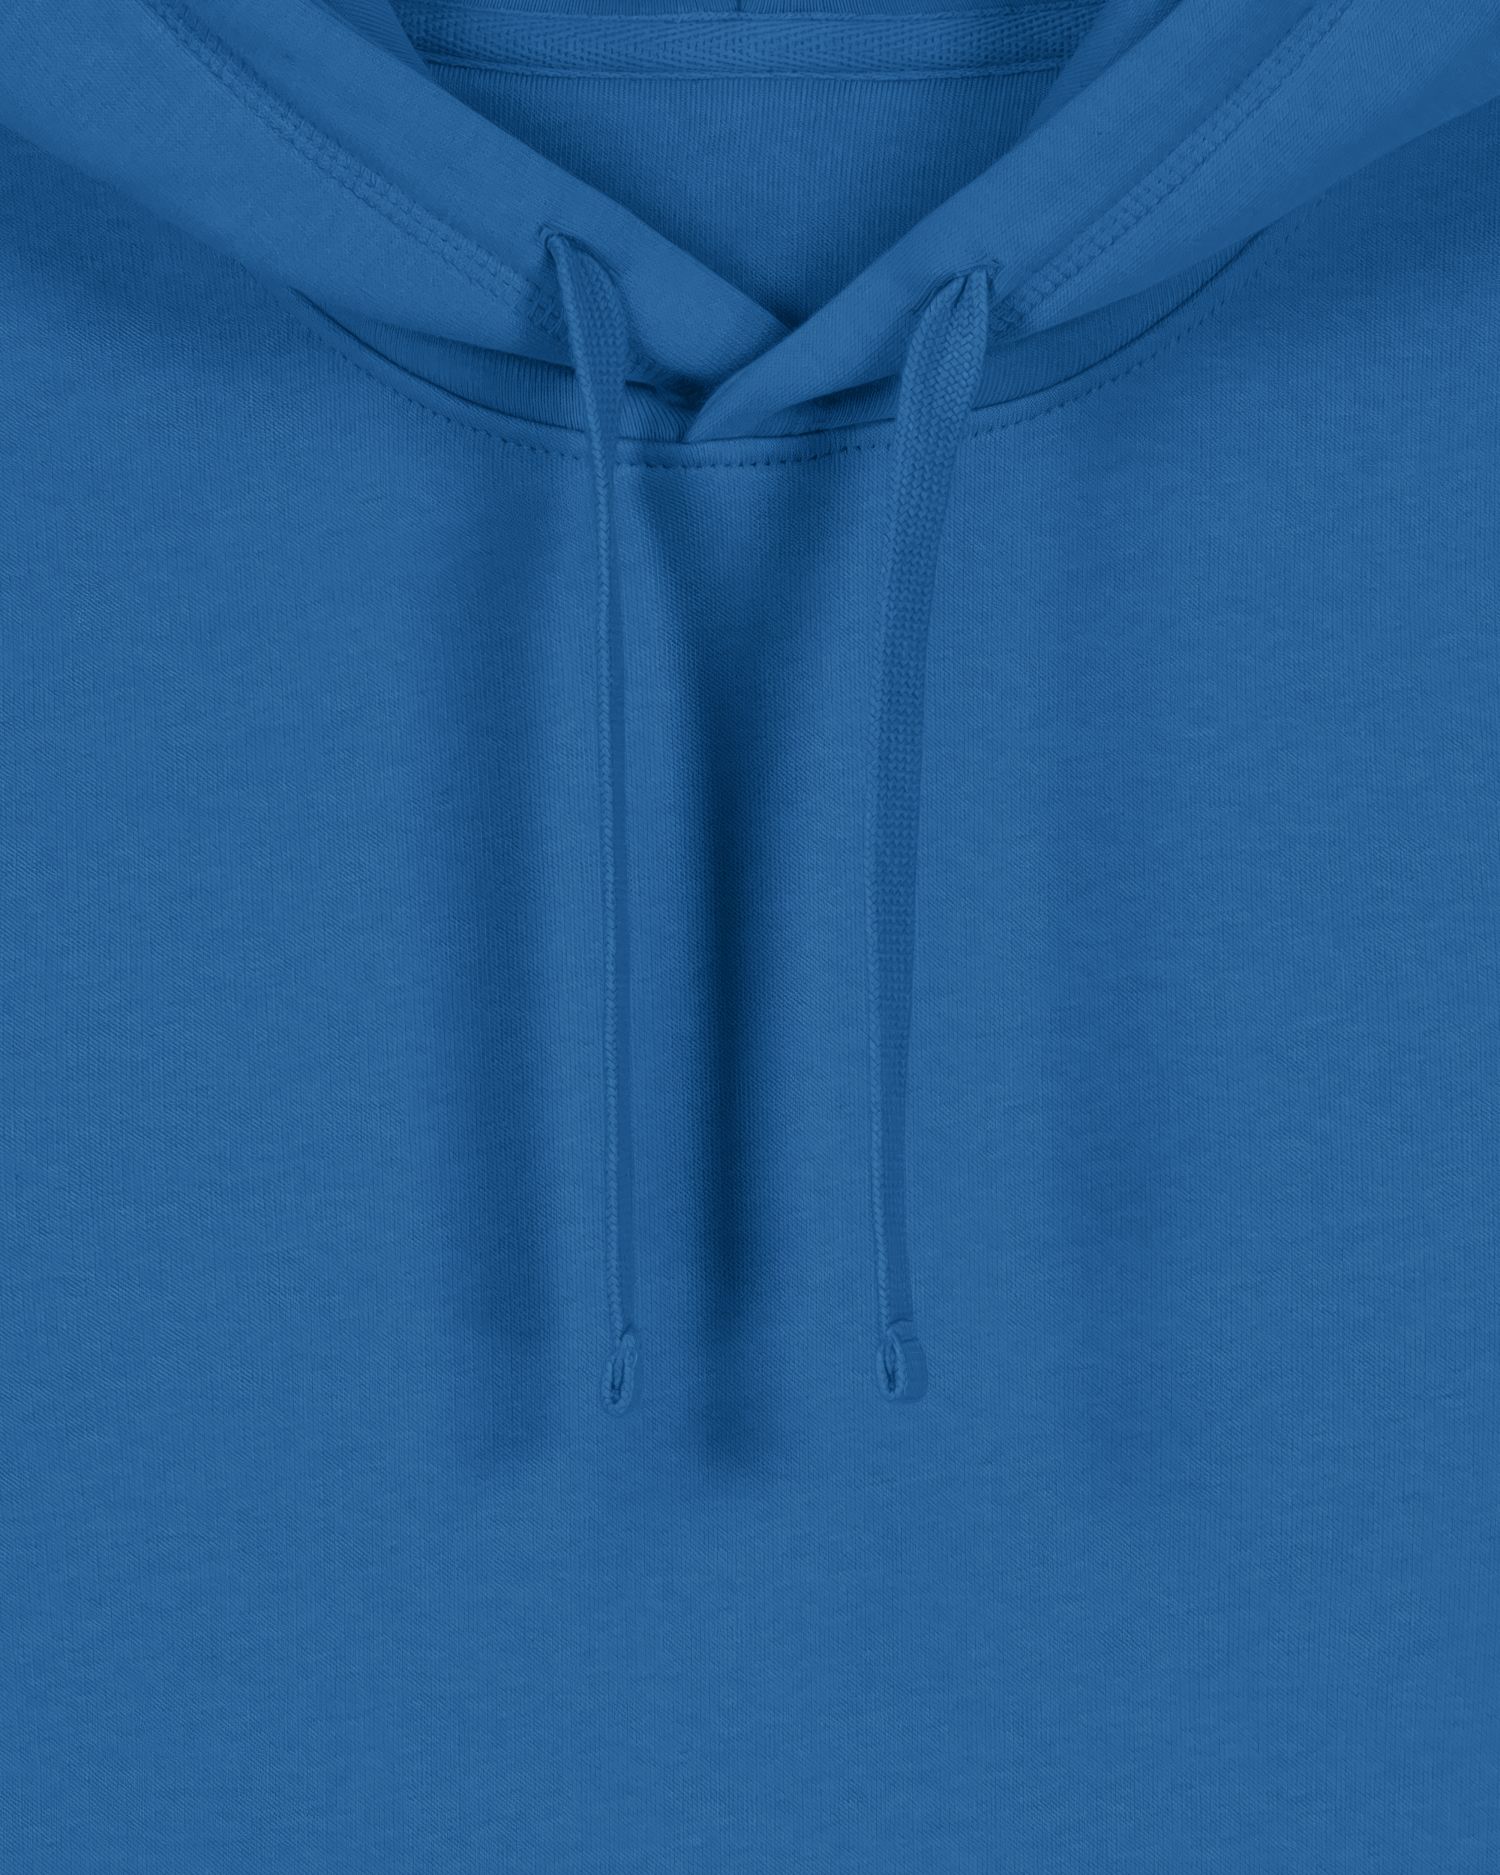 Hoodie sweatshirts Drummer 2.0 in Farbe Royal Blue